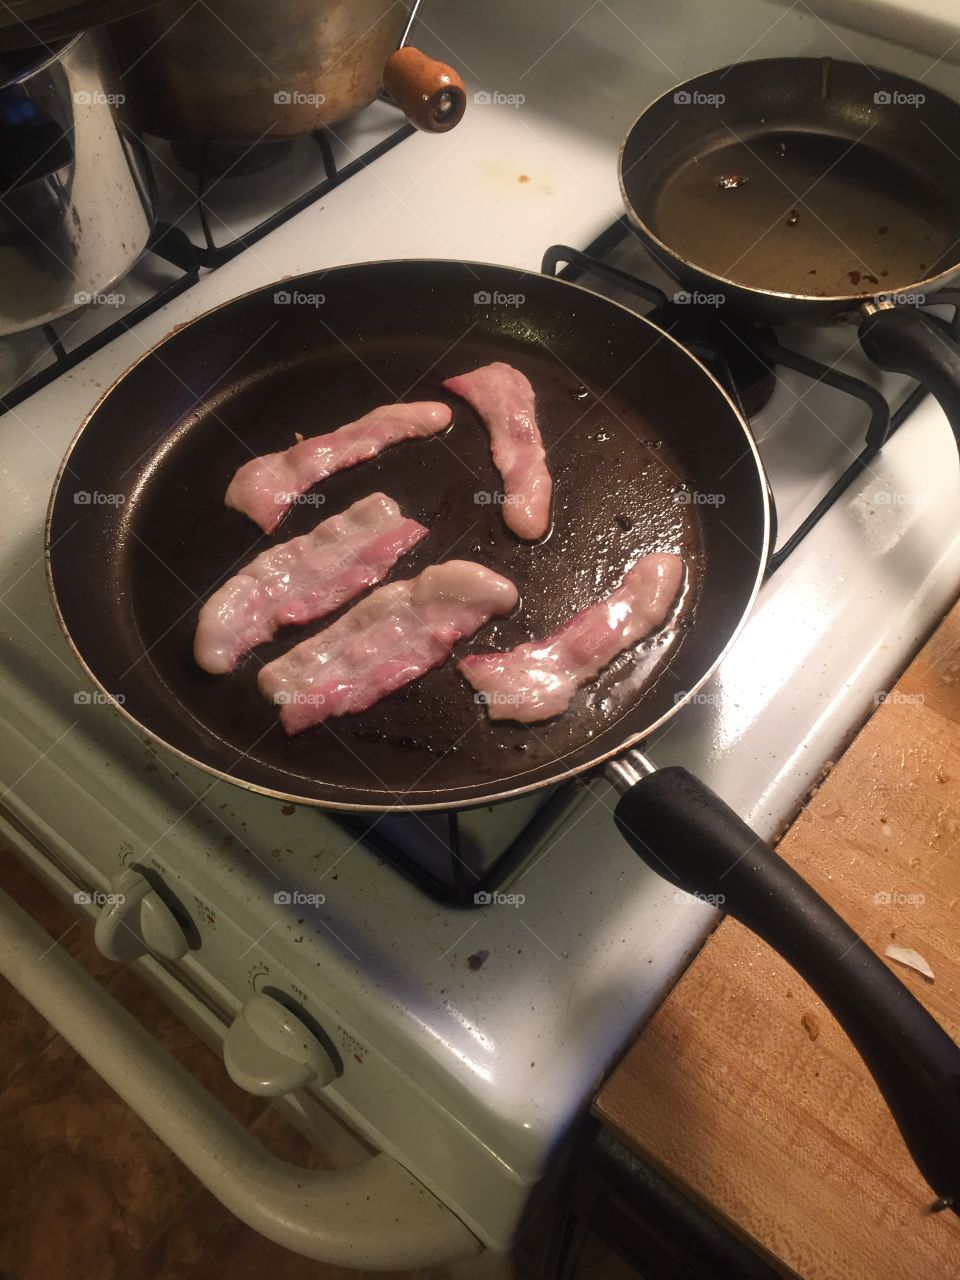 Makin bacon